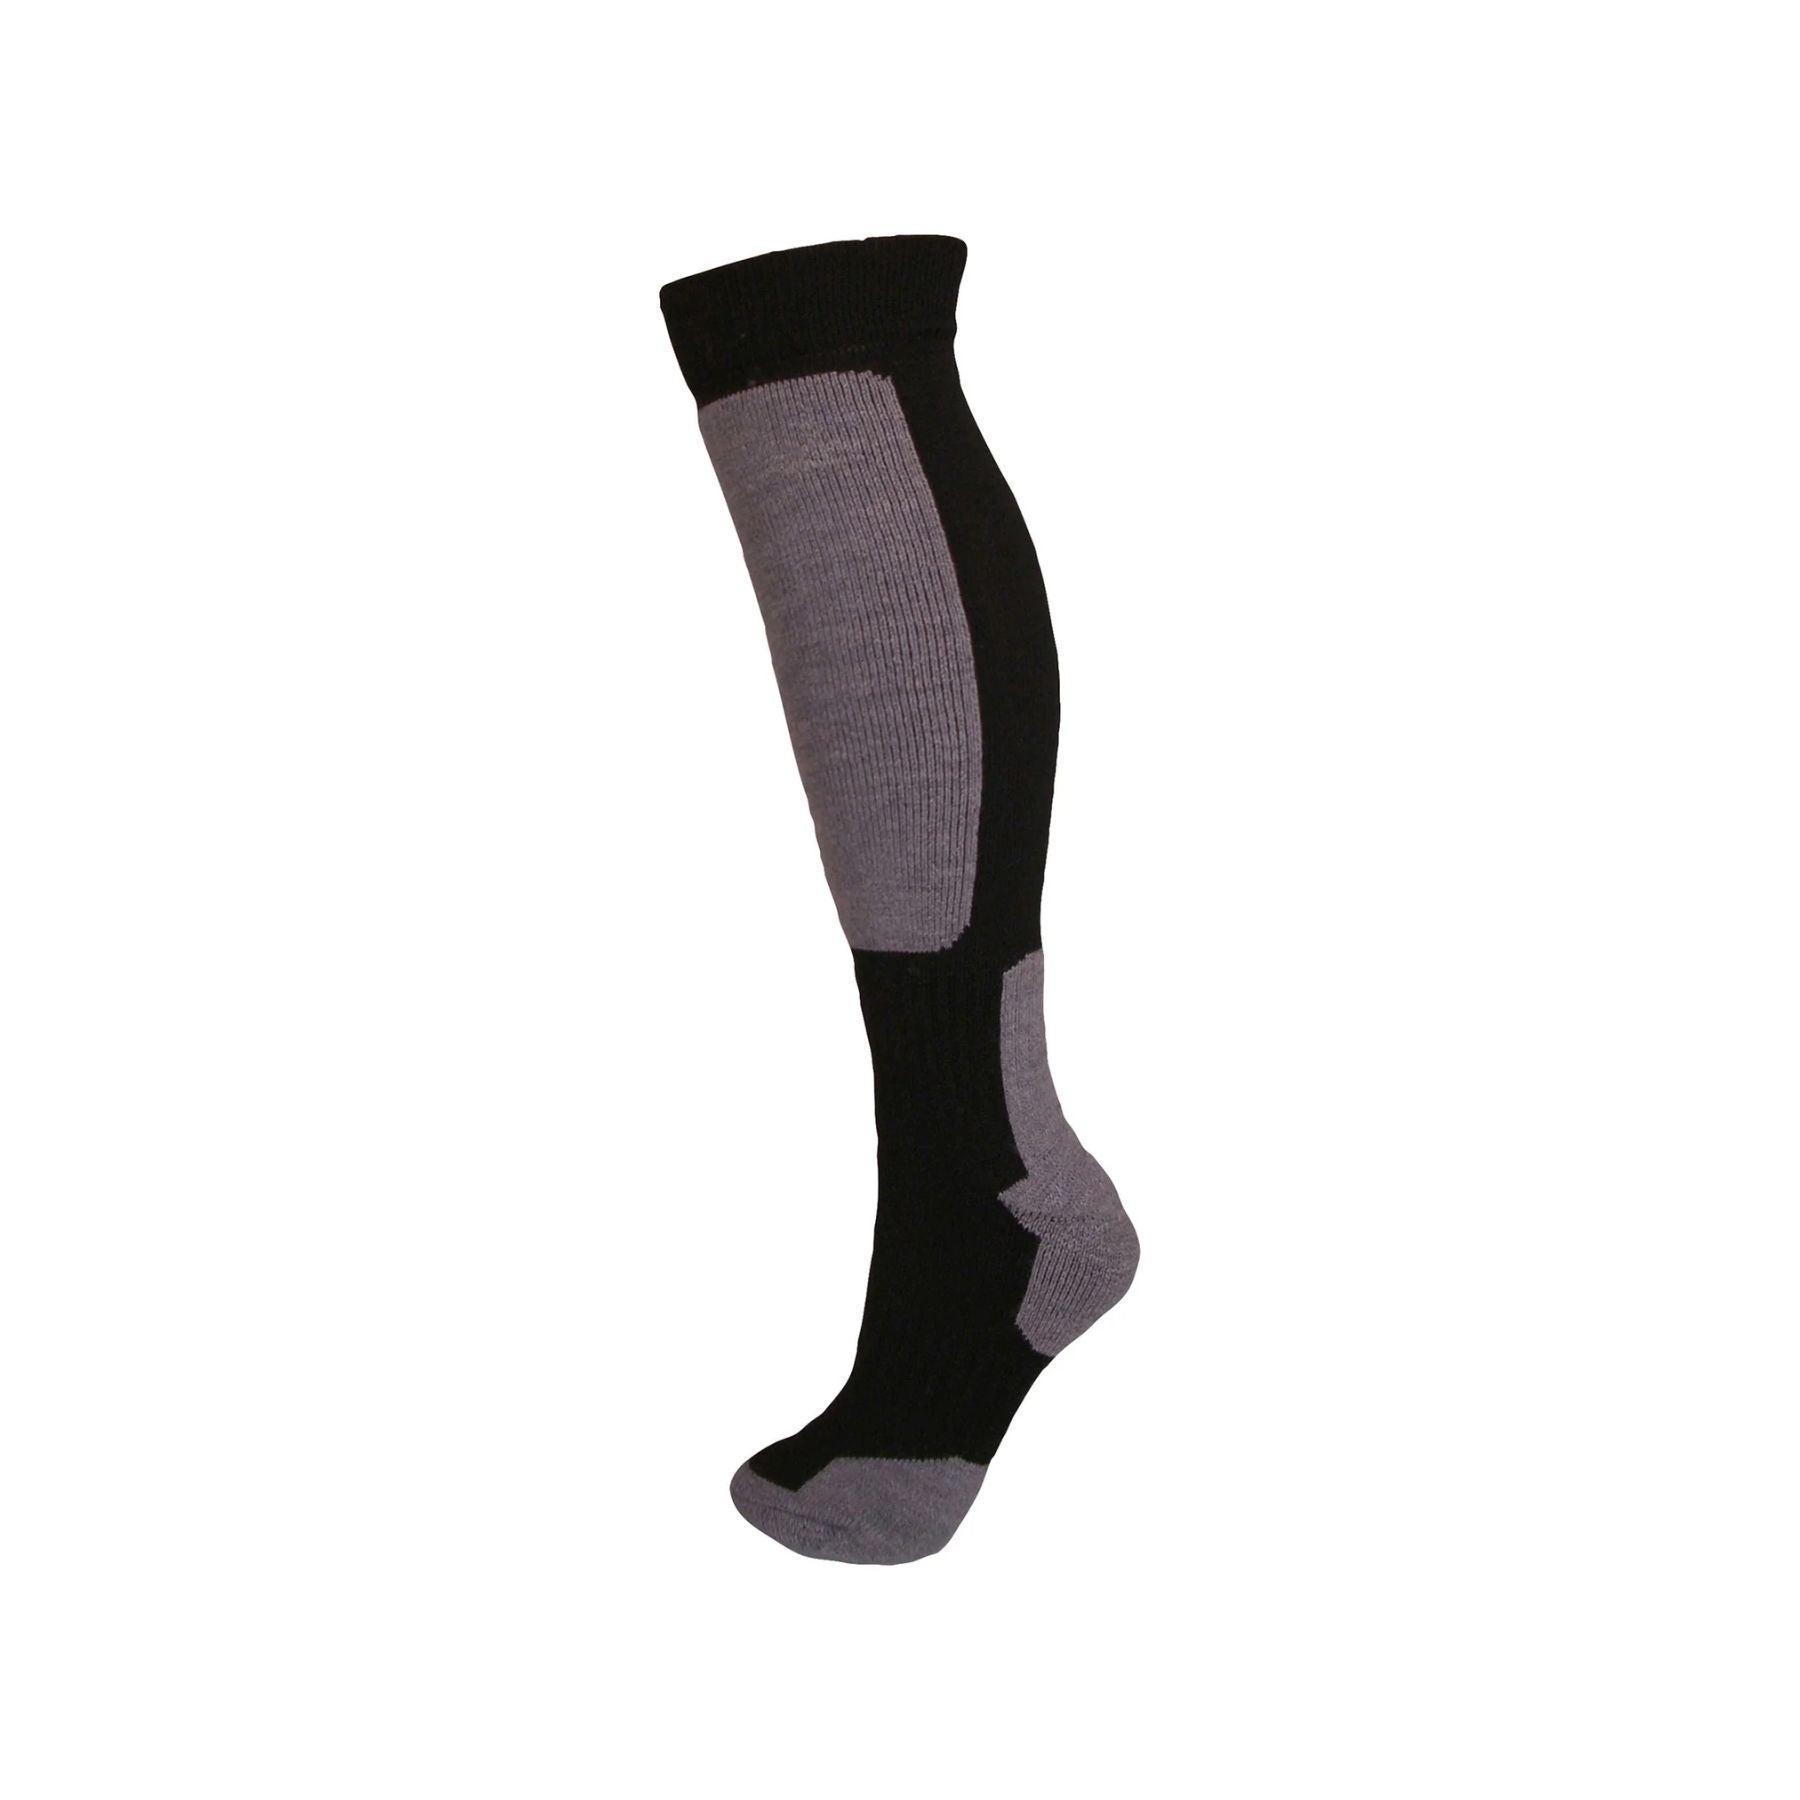 Manbi Snow-Tec Kid's Sock in Black/Grey